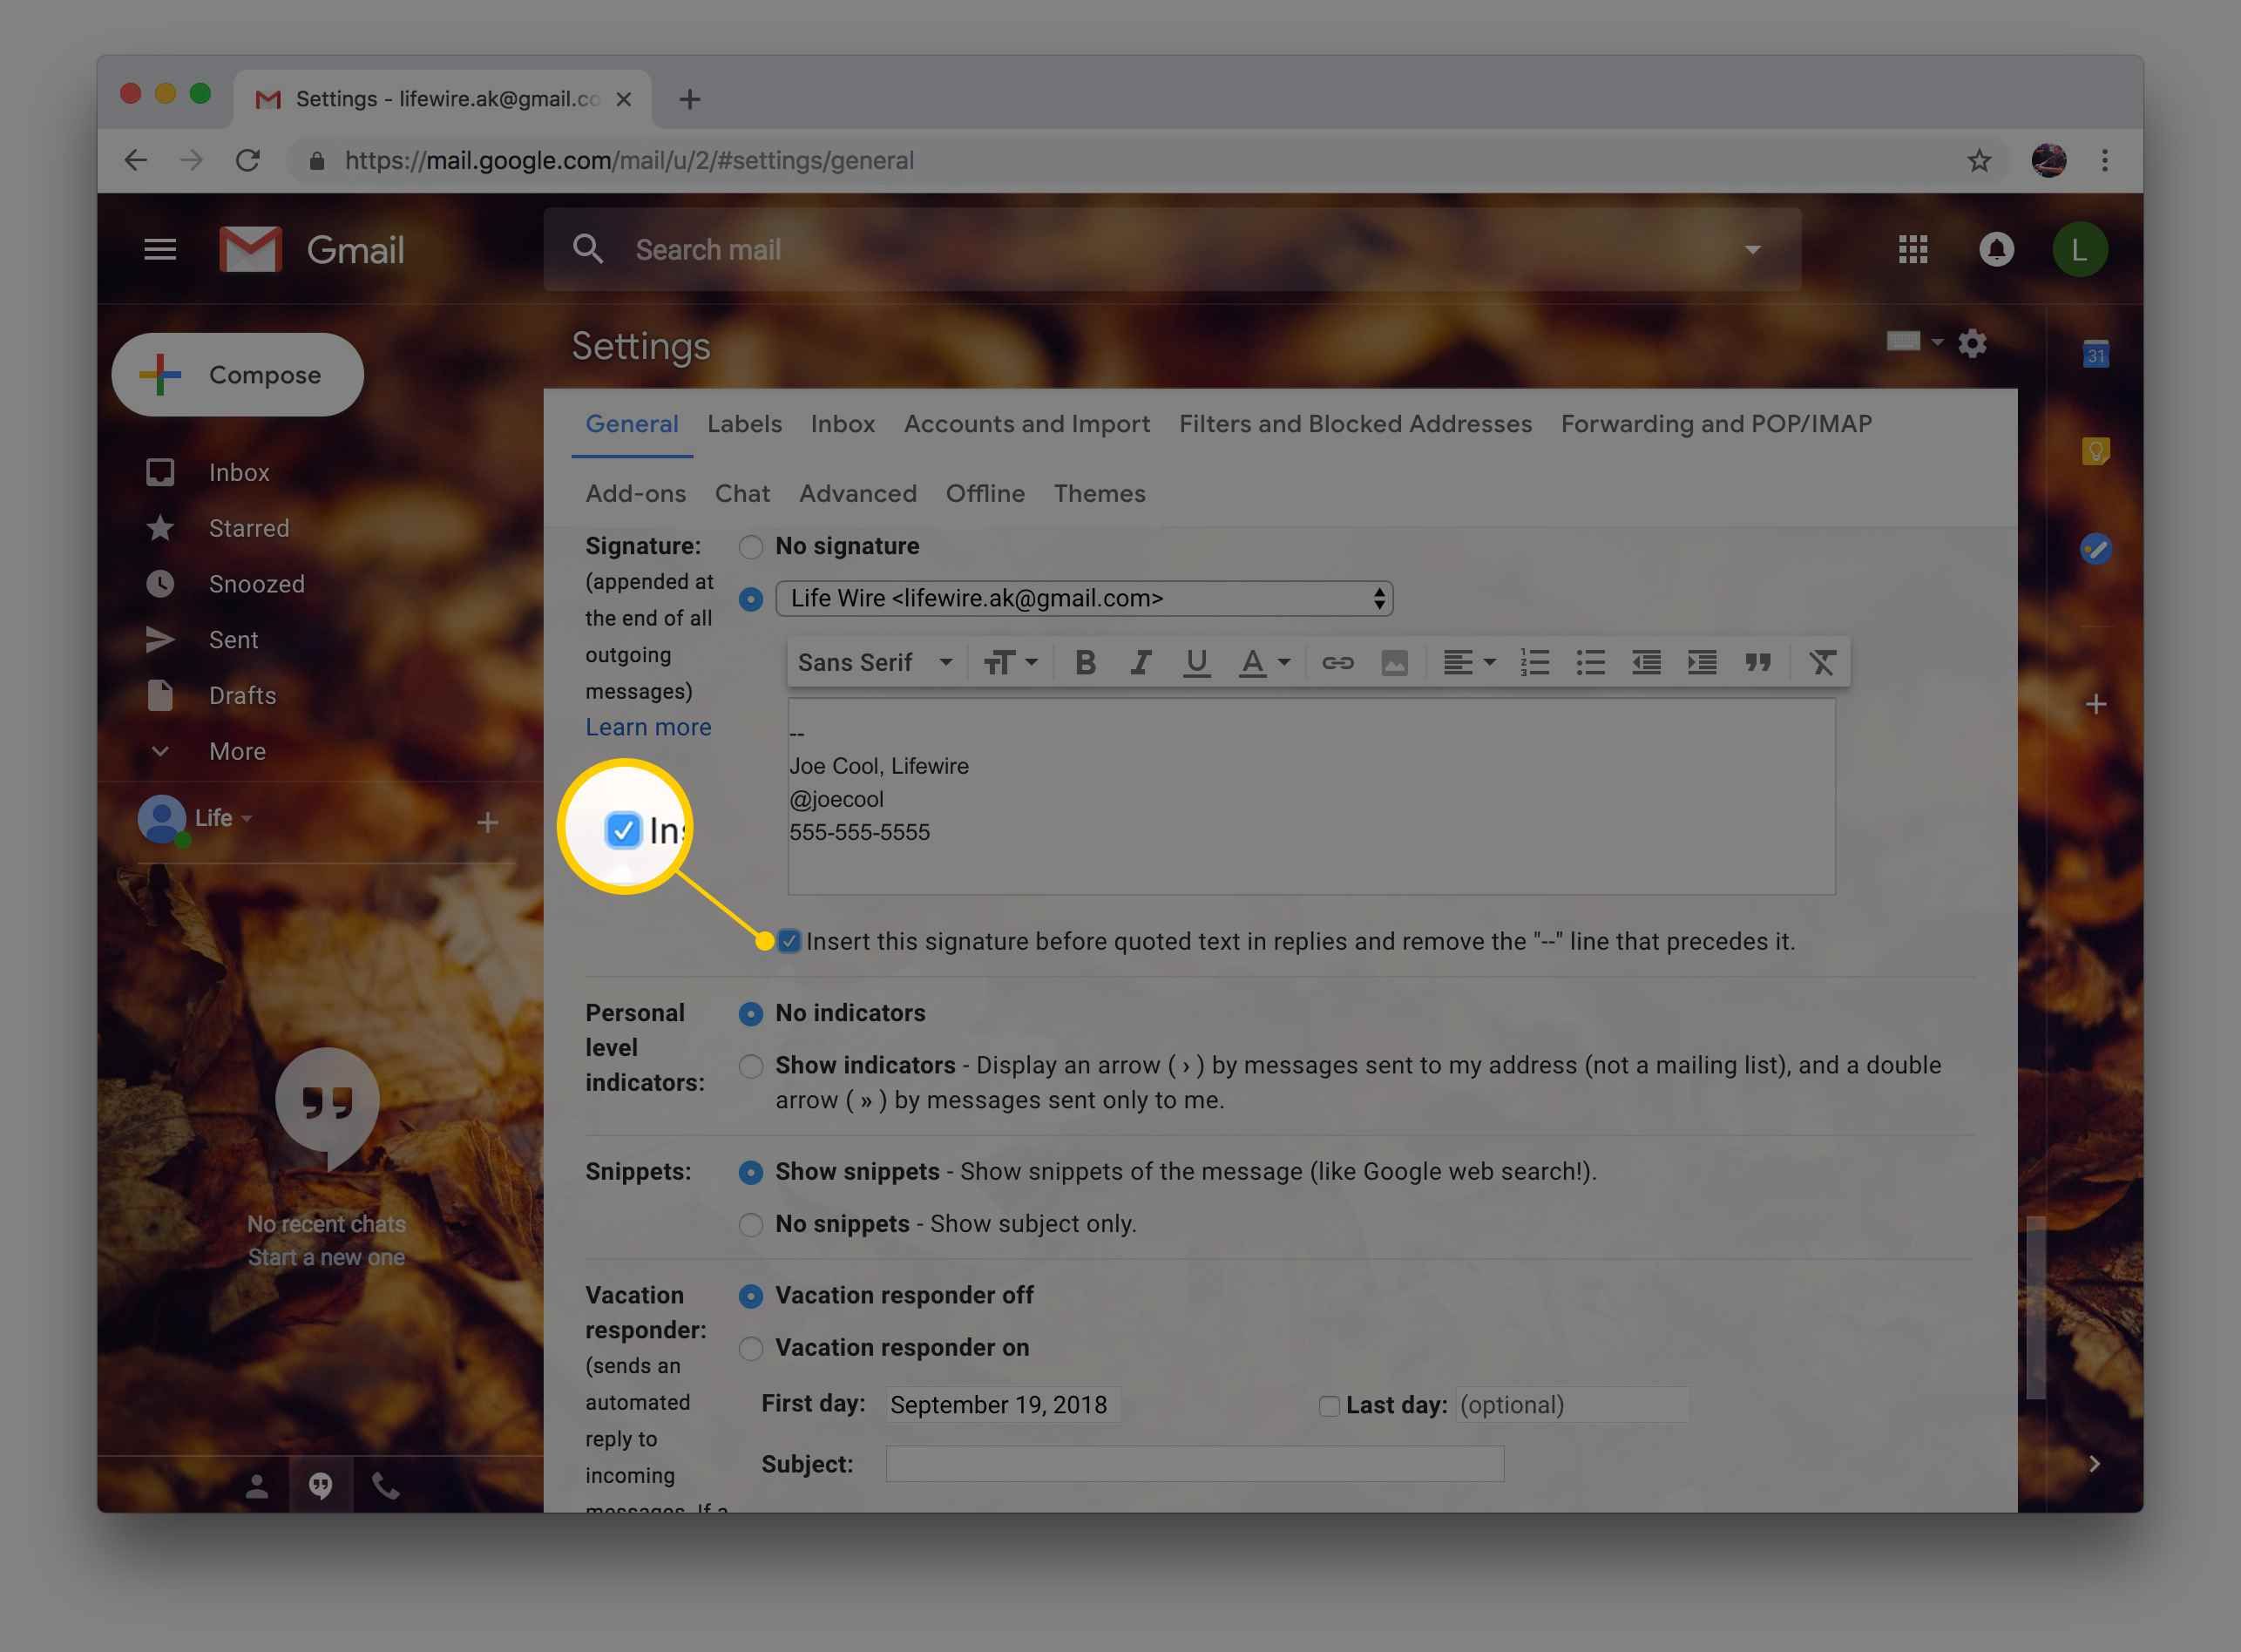 Снимок экрана с возможностью вставить свою подпись перед цитируемым текстом в настройках Gmail через веб-браузер Chrome